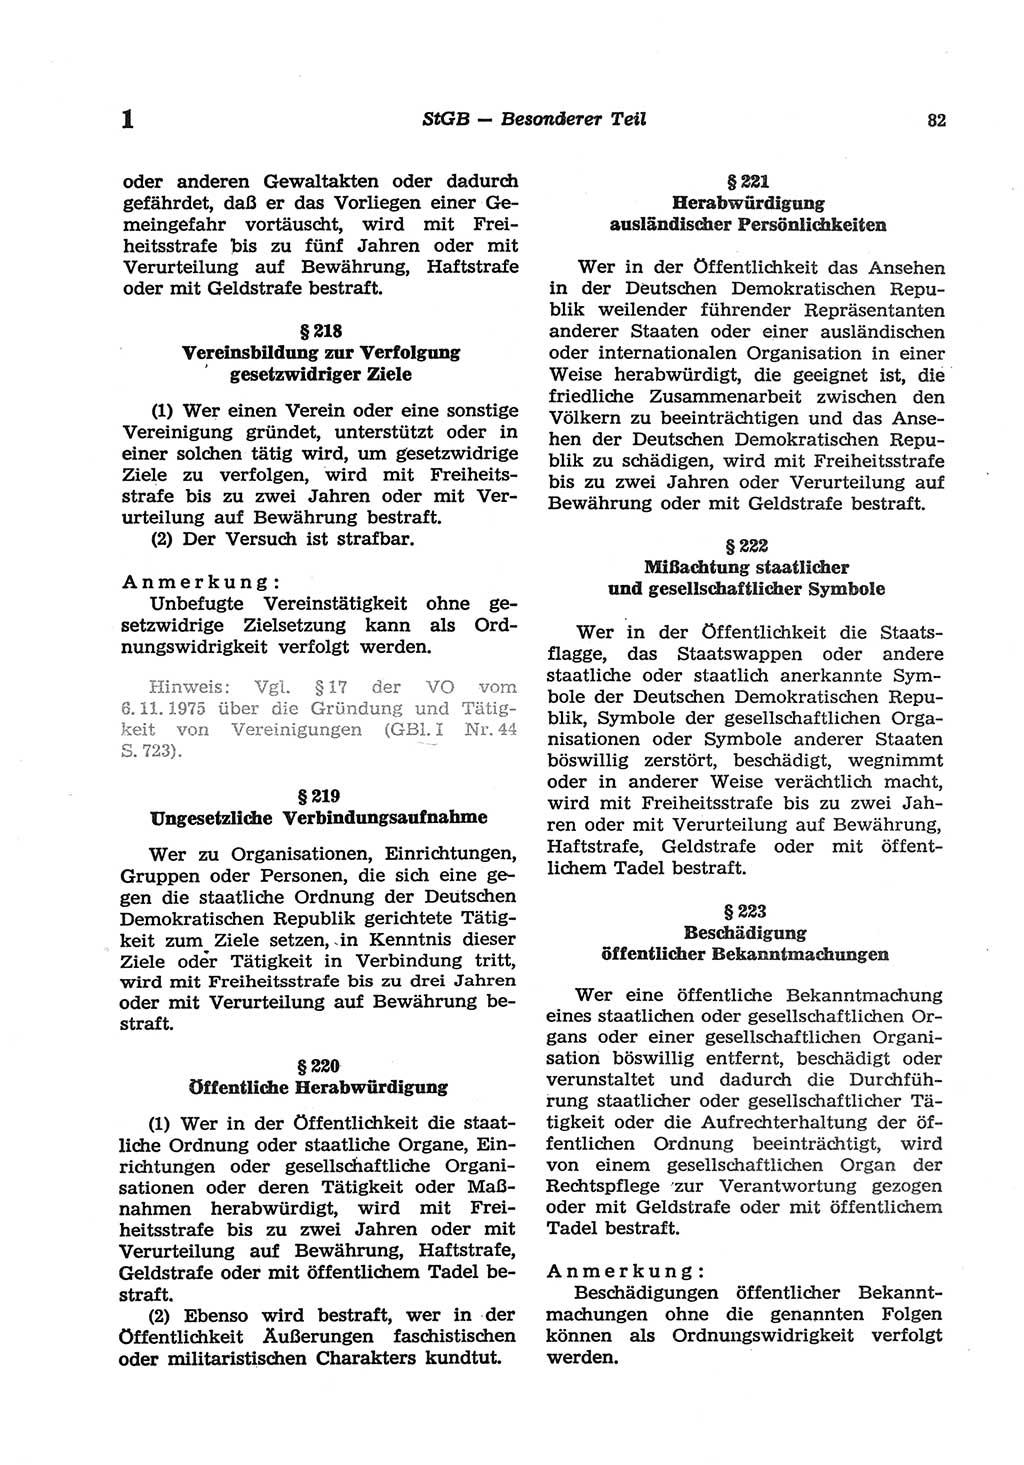 Strafgesetzbuch (StGB) der Deutschen Demokratischen Republik (DDR) und angrenzende Gesetze und Bestimmungen 1977, Seite 82 (StGB DDR Ges. Best. 1977, S. 82)